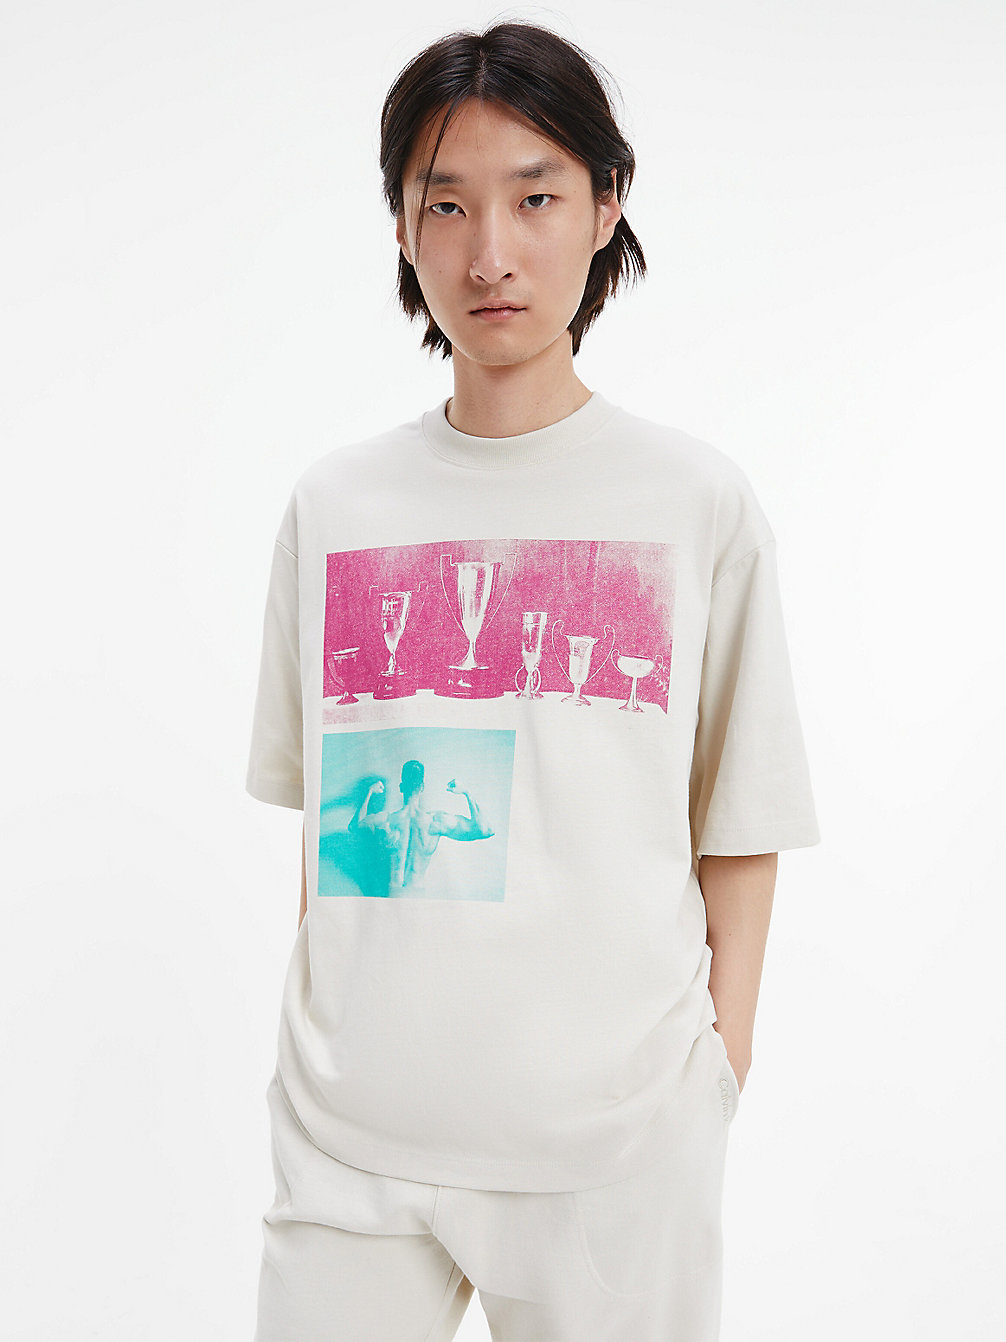 BONE WHITE Unisex Printed T-Shirt - CK Standards undefined men Calvin Klein